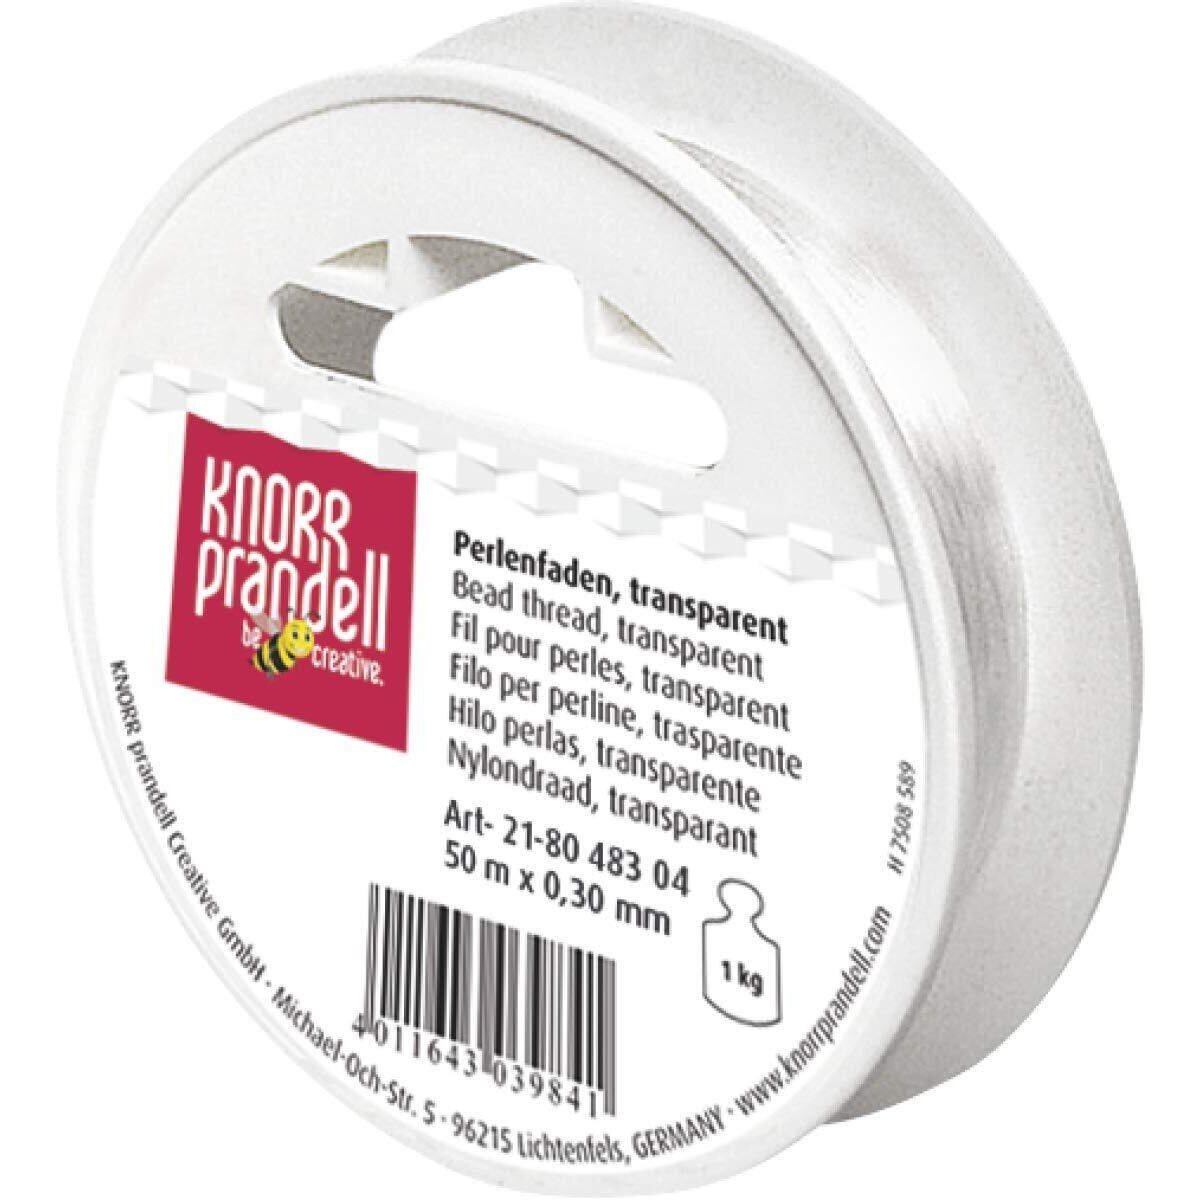 Knorr Prandell Perlonfaden transparent, 50m